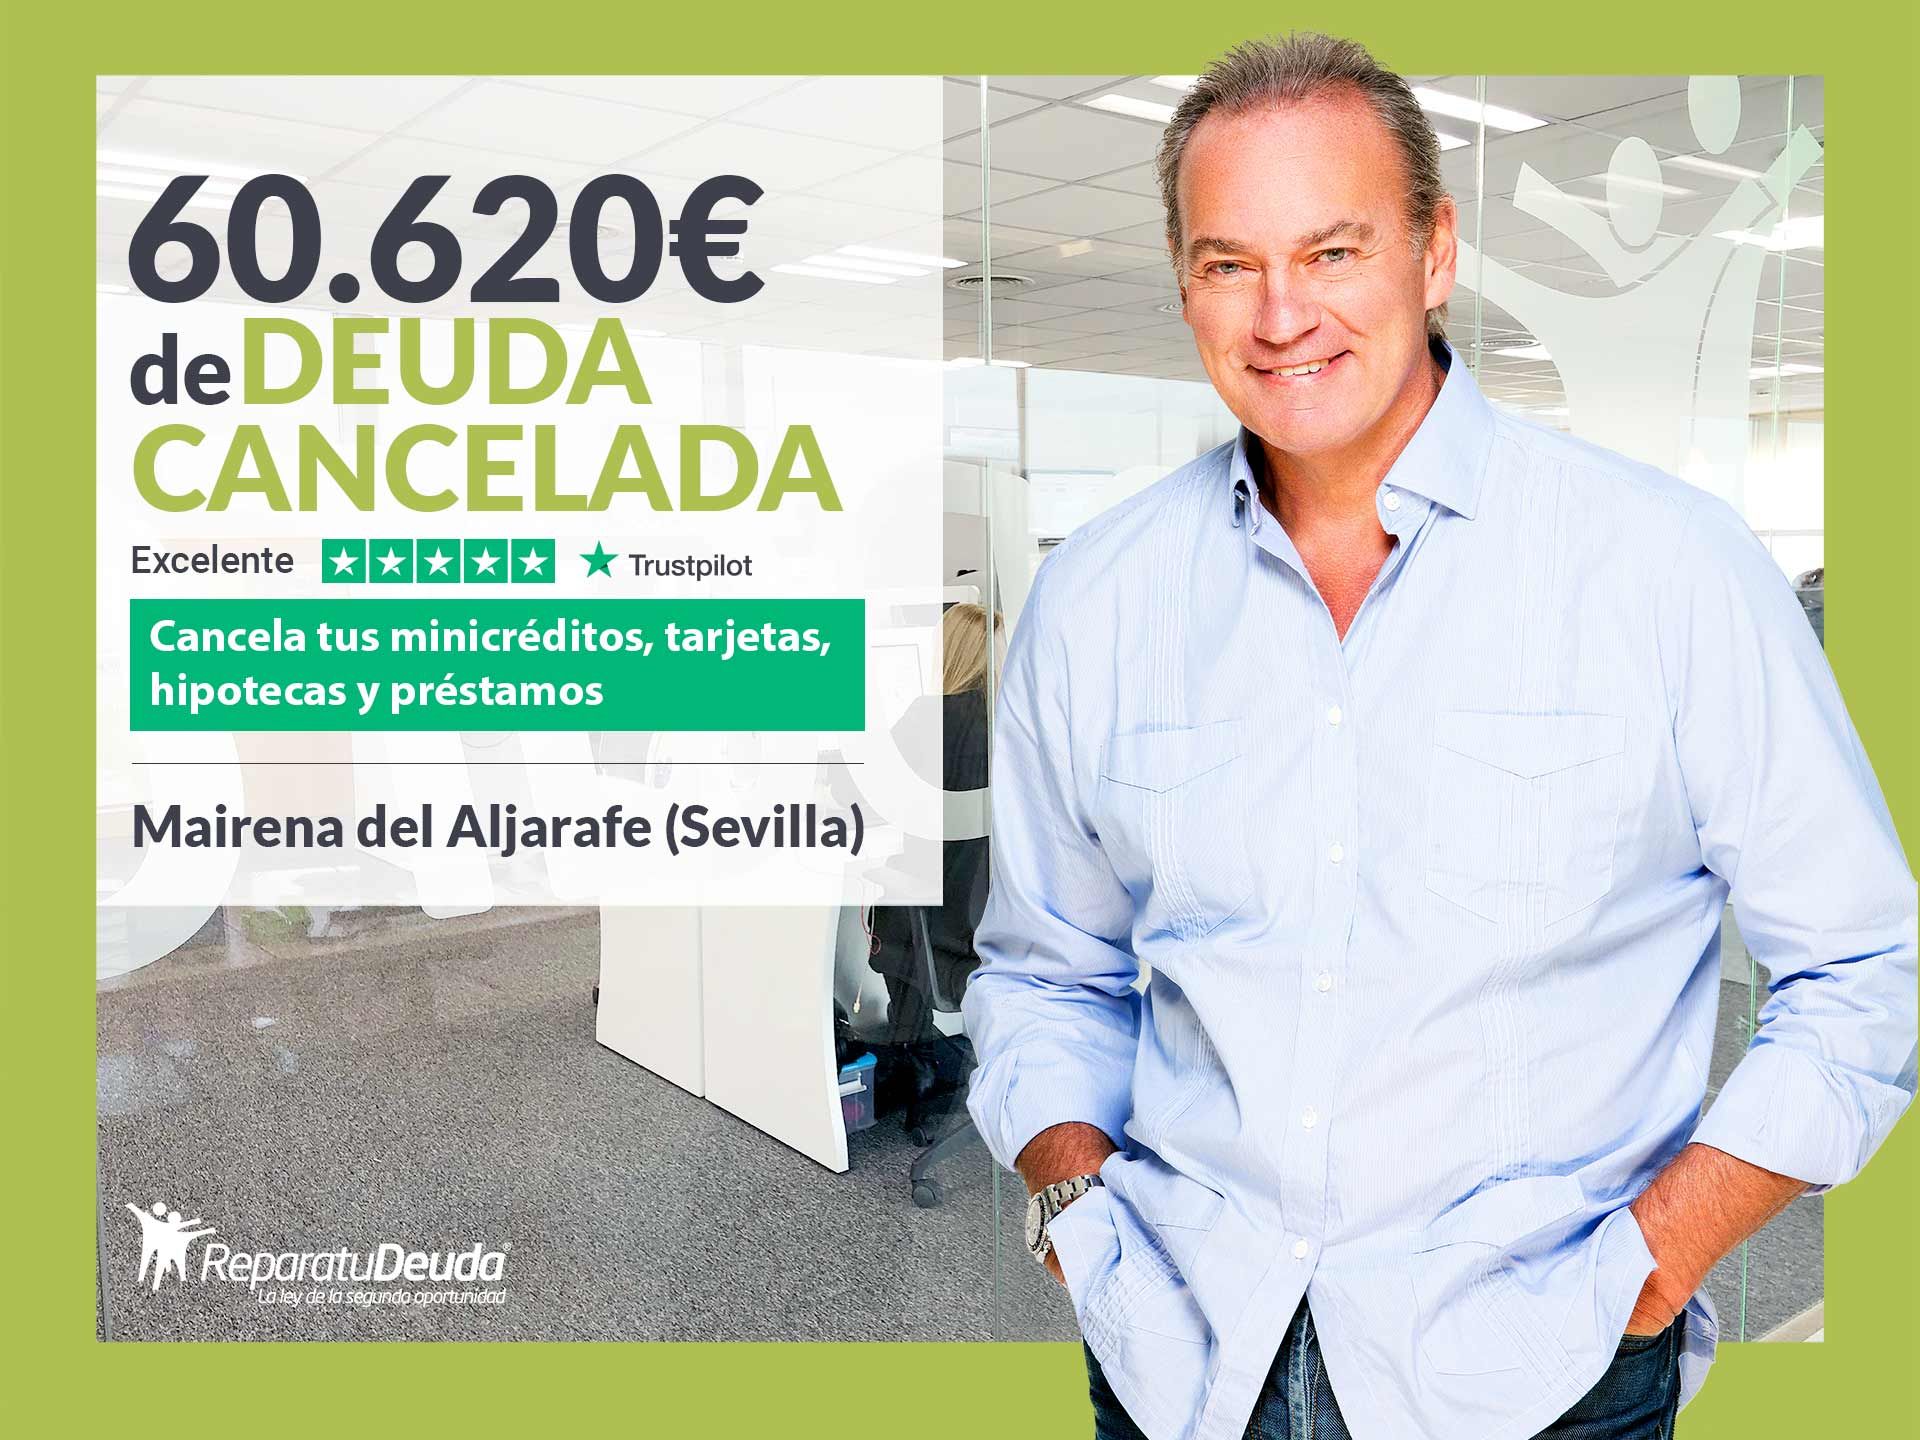 Repara tu Deuda cancela 60.620? en Mairena del Aljarafe (Sevilla) con la Ley de Segunda Oportunidad